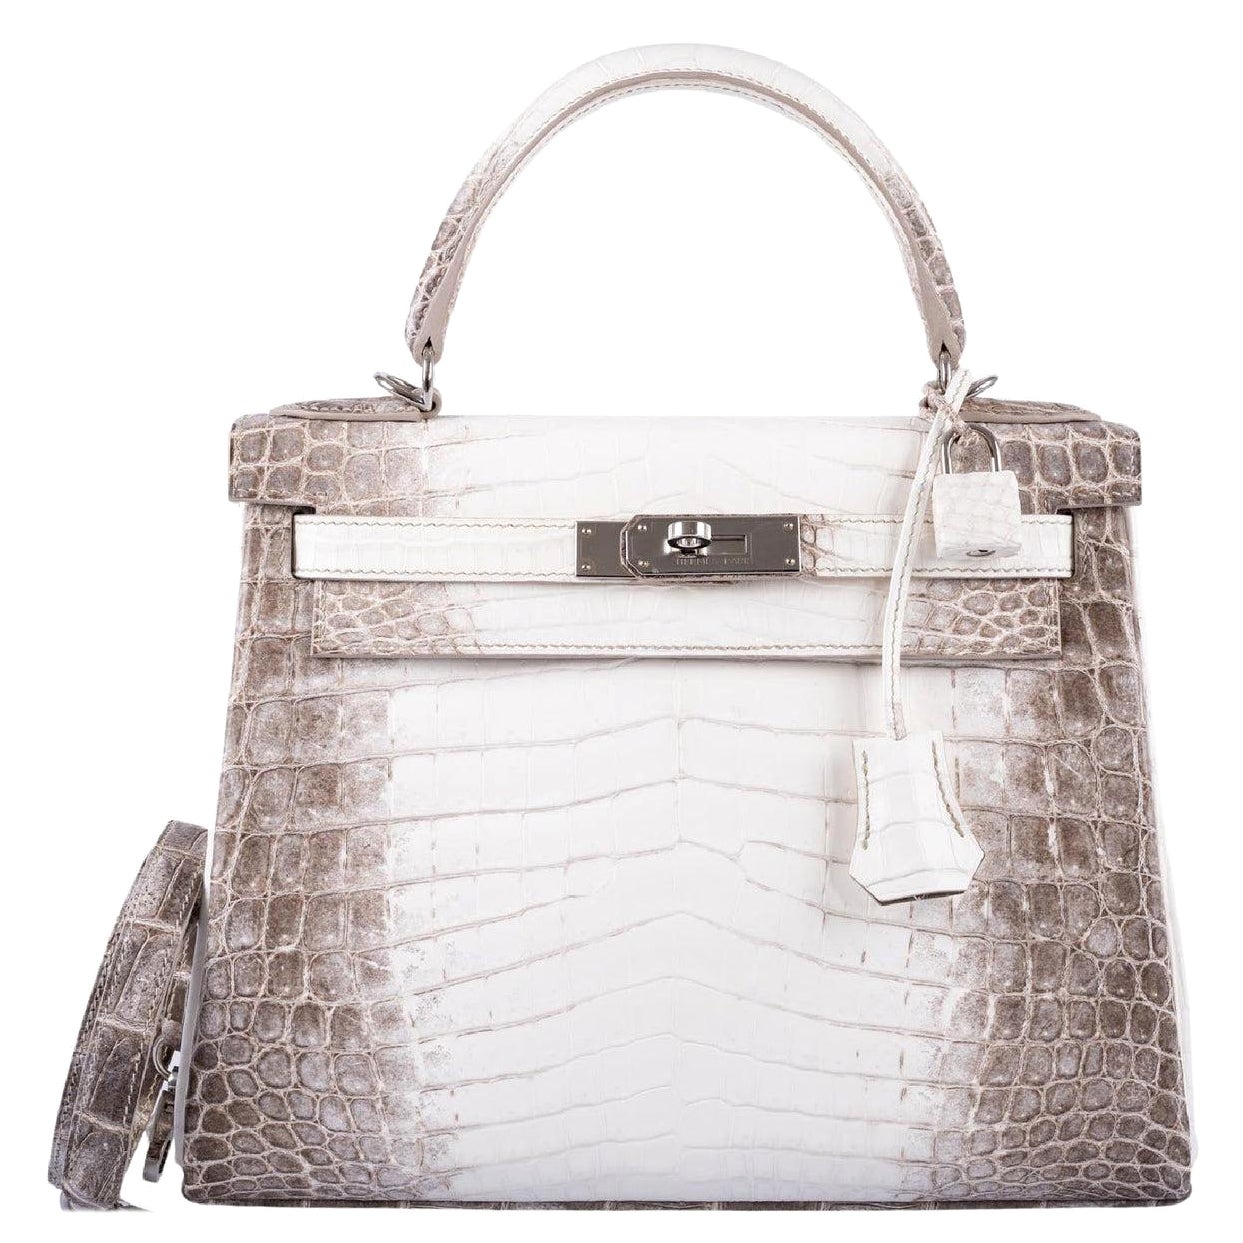 Hermès 30cm Craie Ostrich Birkin Bag with Palladium Hardware. A,, Lot  #59079